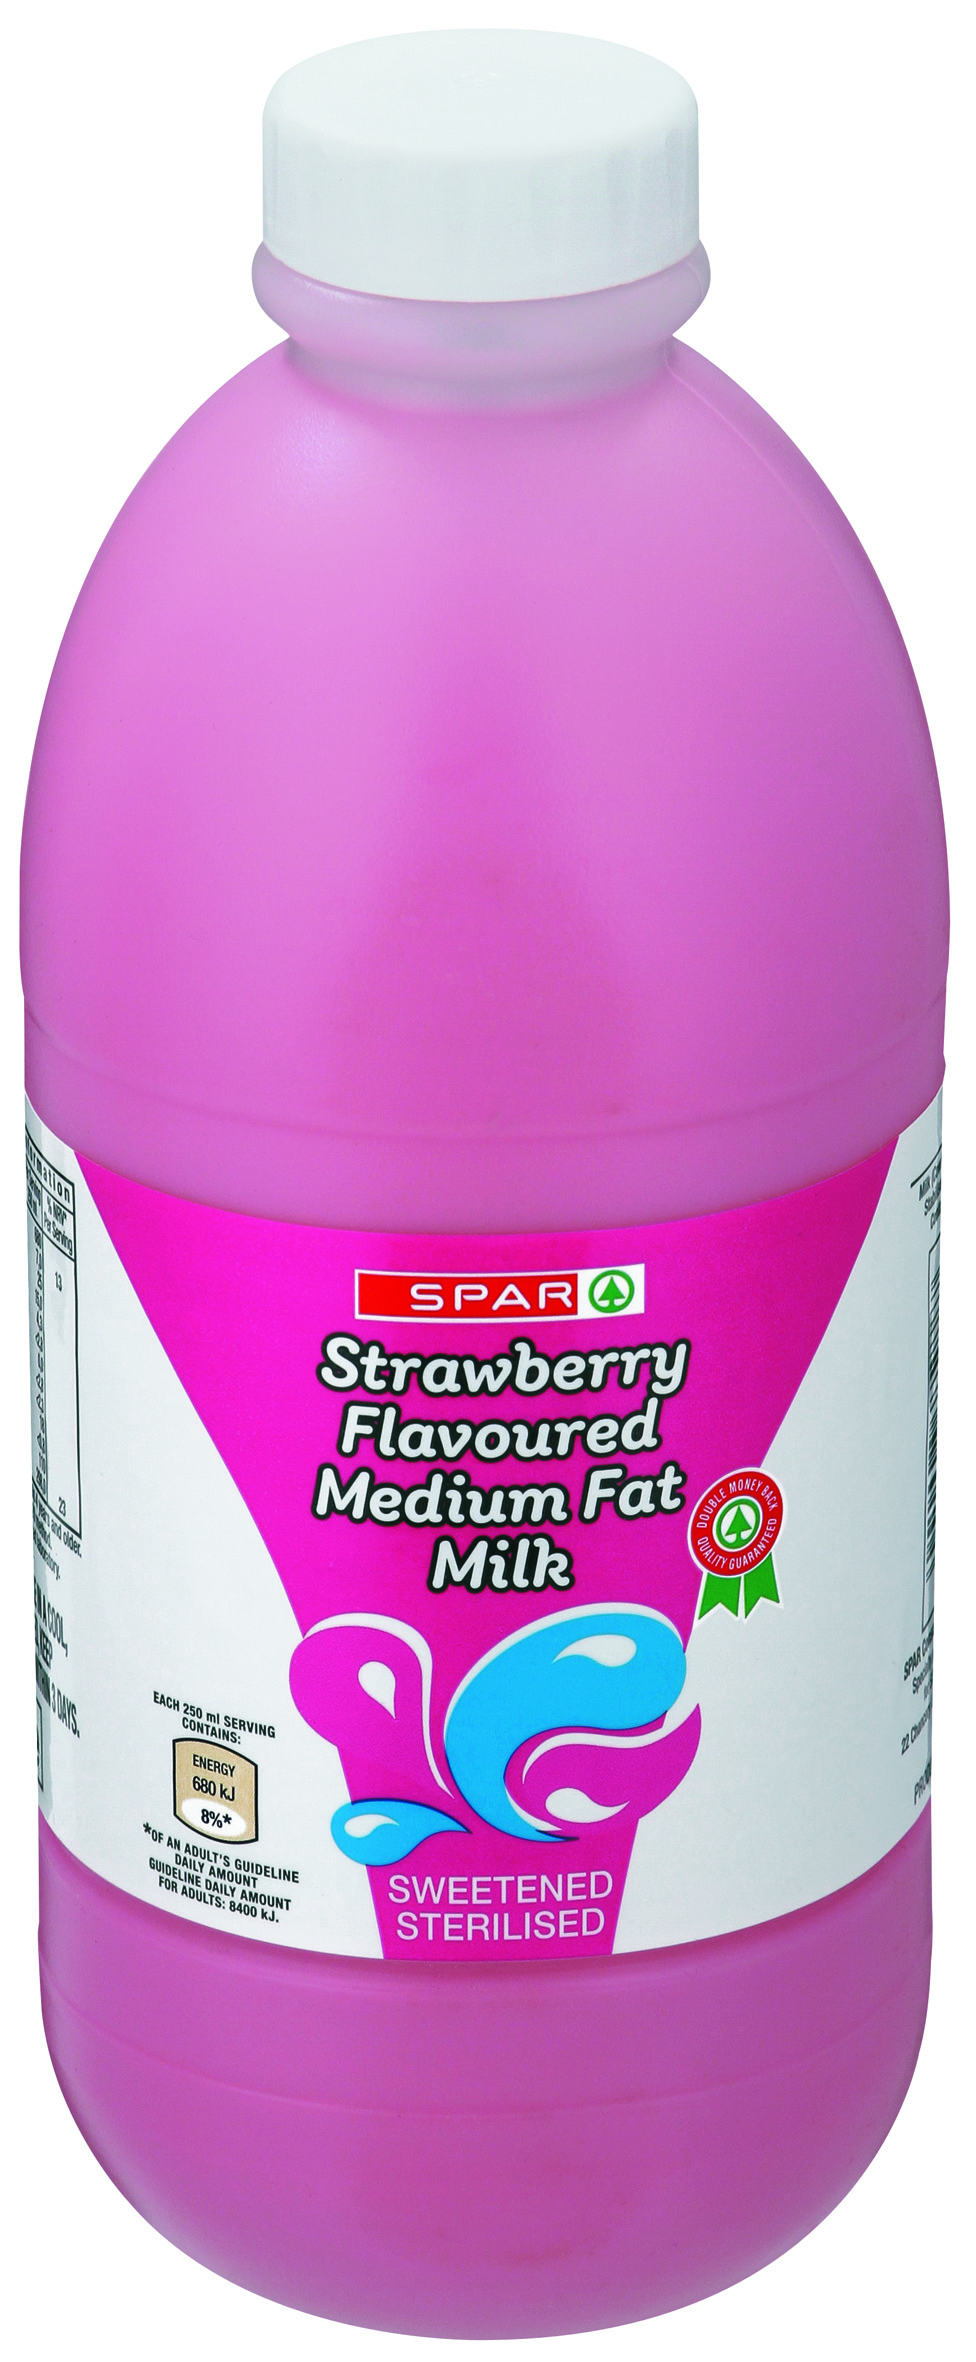 flavoured medium fat milk strawberry